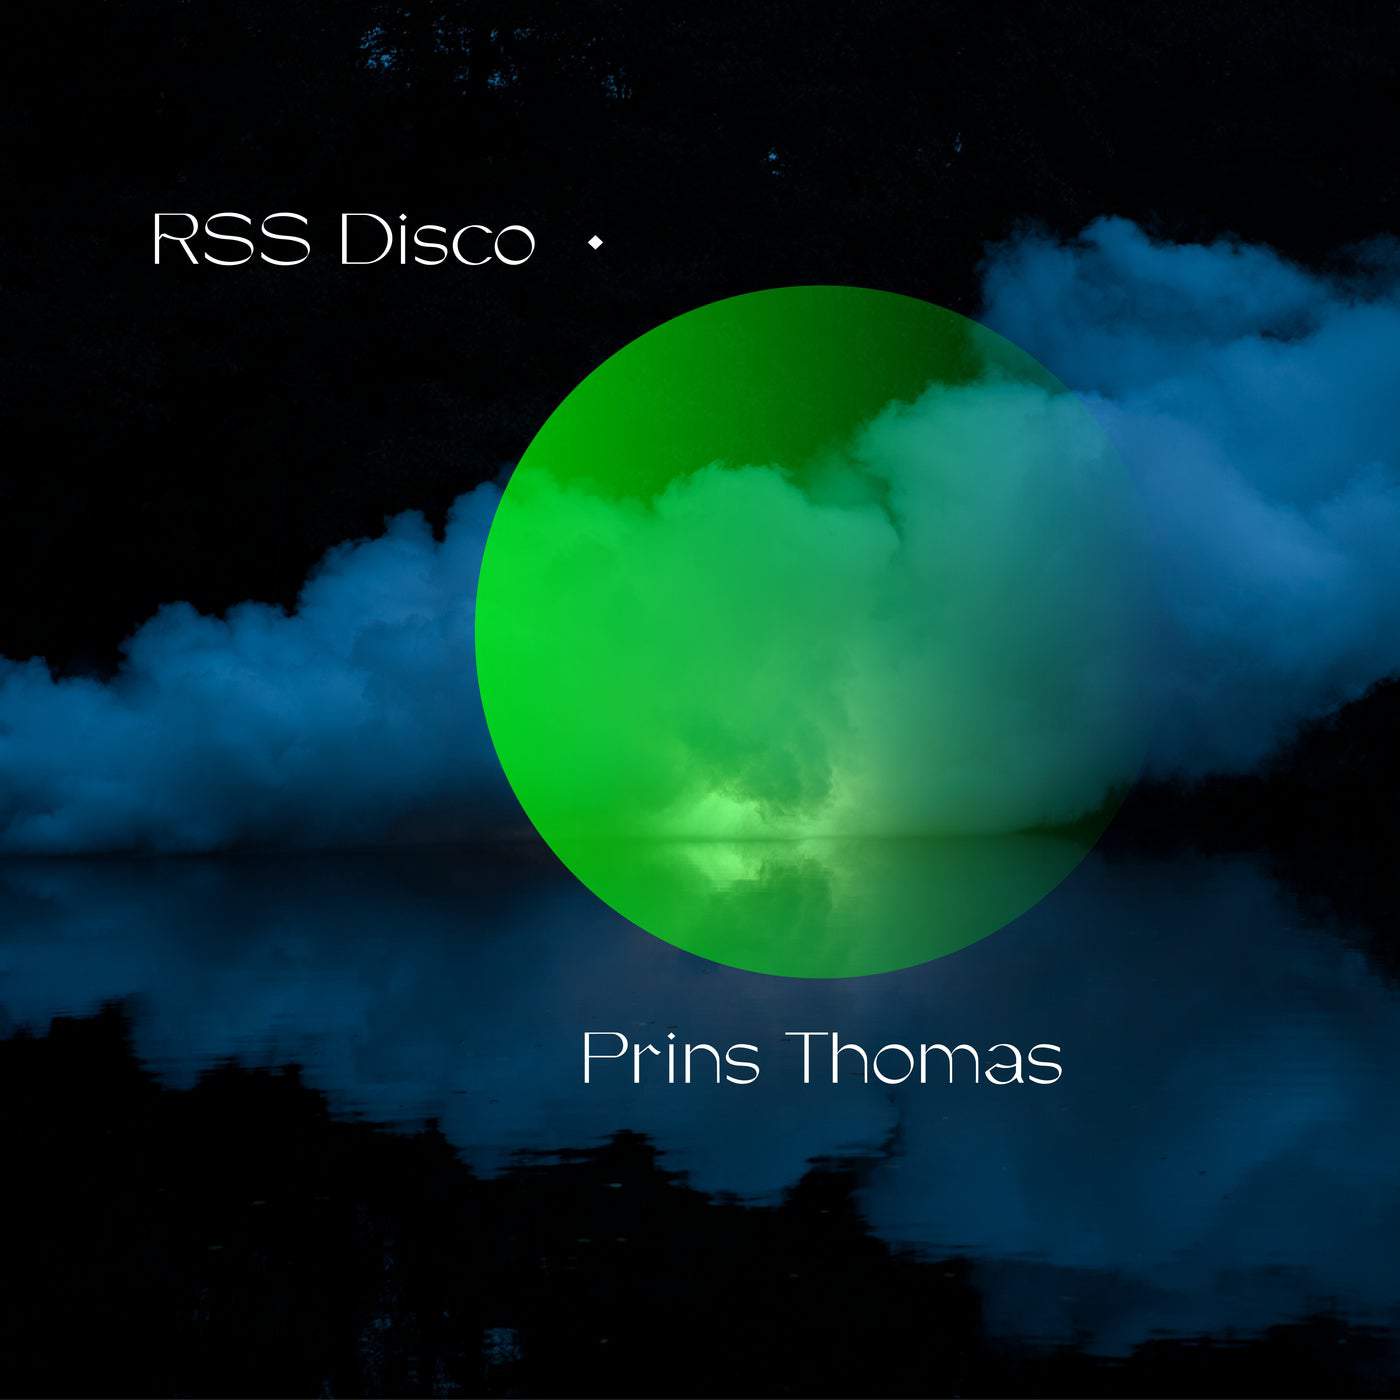 Download Prins Thomas, RSS Disco - Mooncake on Electrobuzz